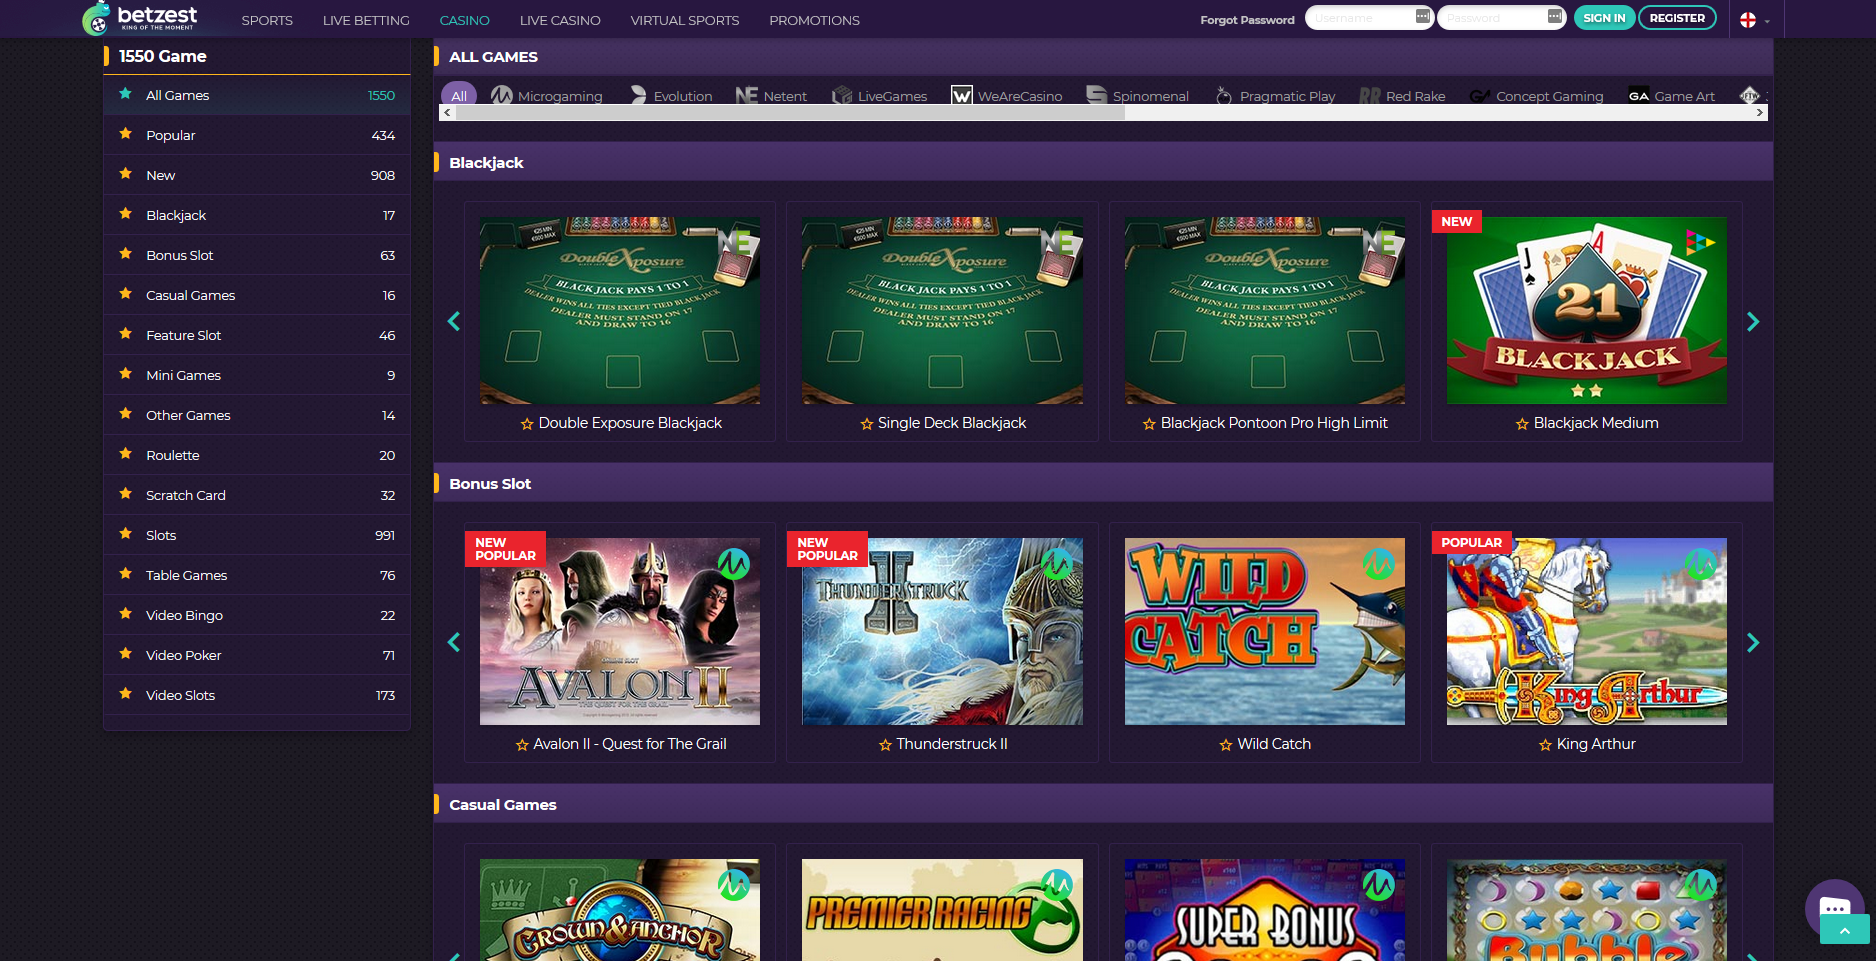 Casino online free spins